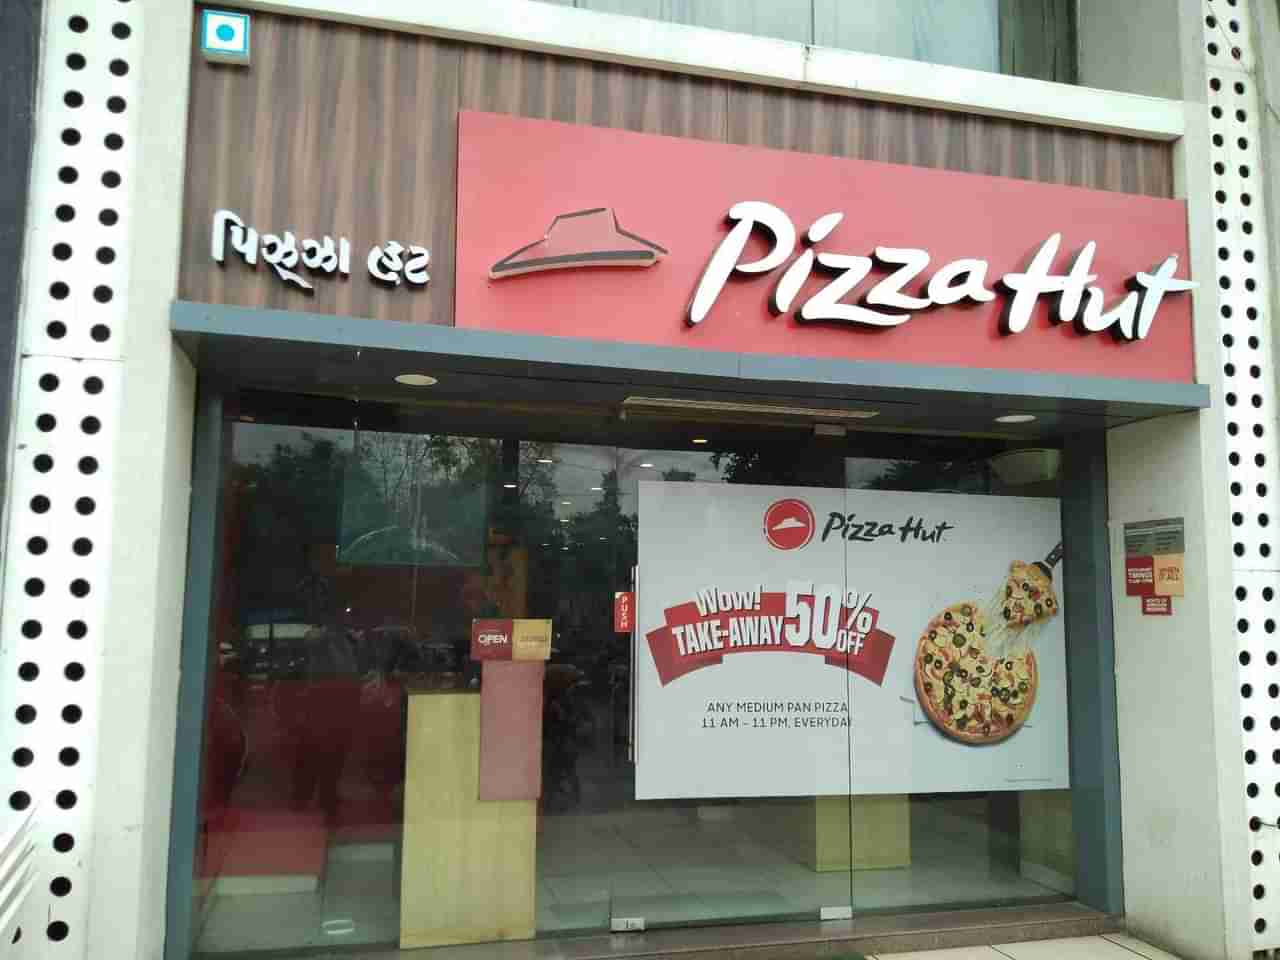 Pizza Hutમાં પિત્ઝાની સાથે પીરસવામાં આવી જીવાત! આખરે કરાયું બંધ, જુઓ VIDEO